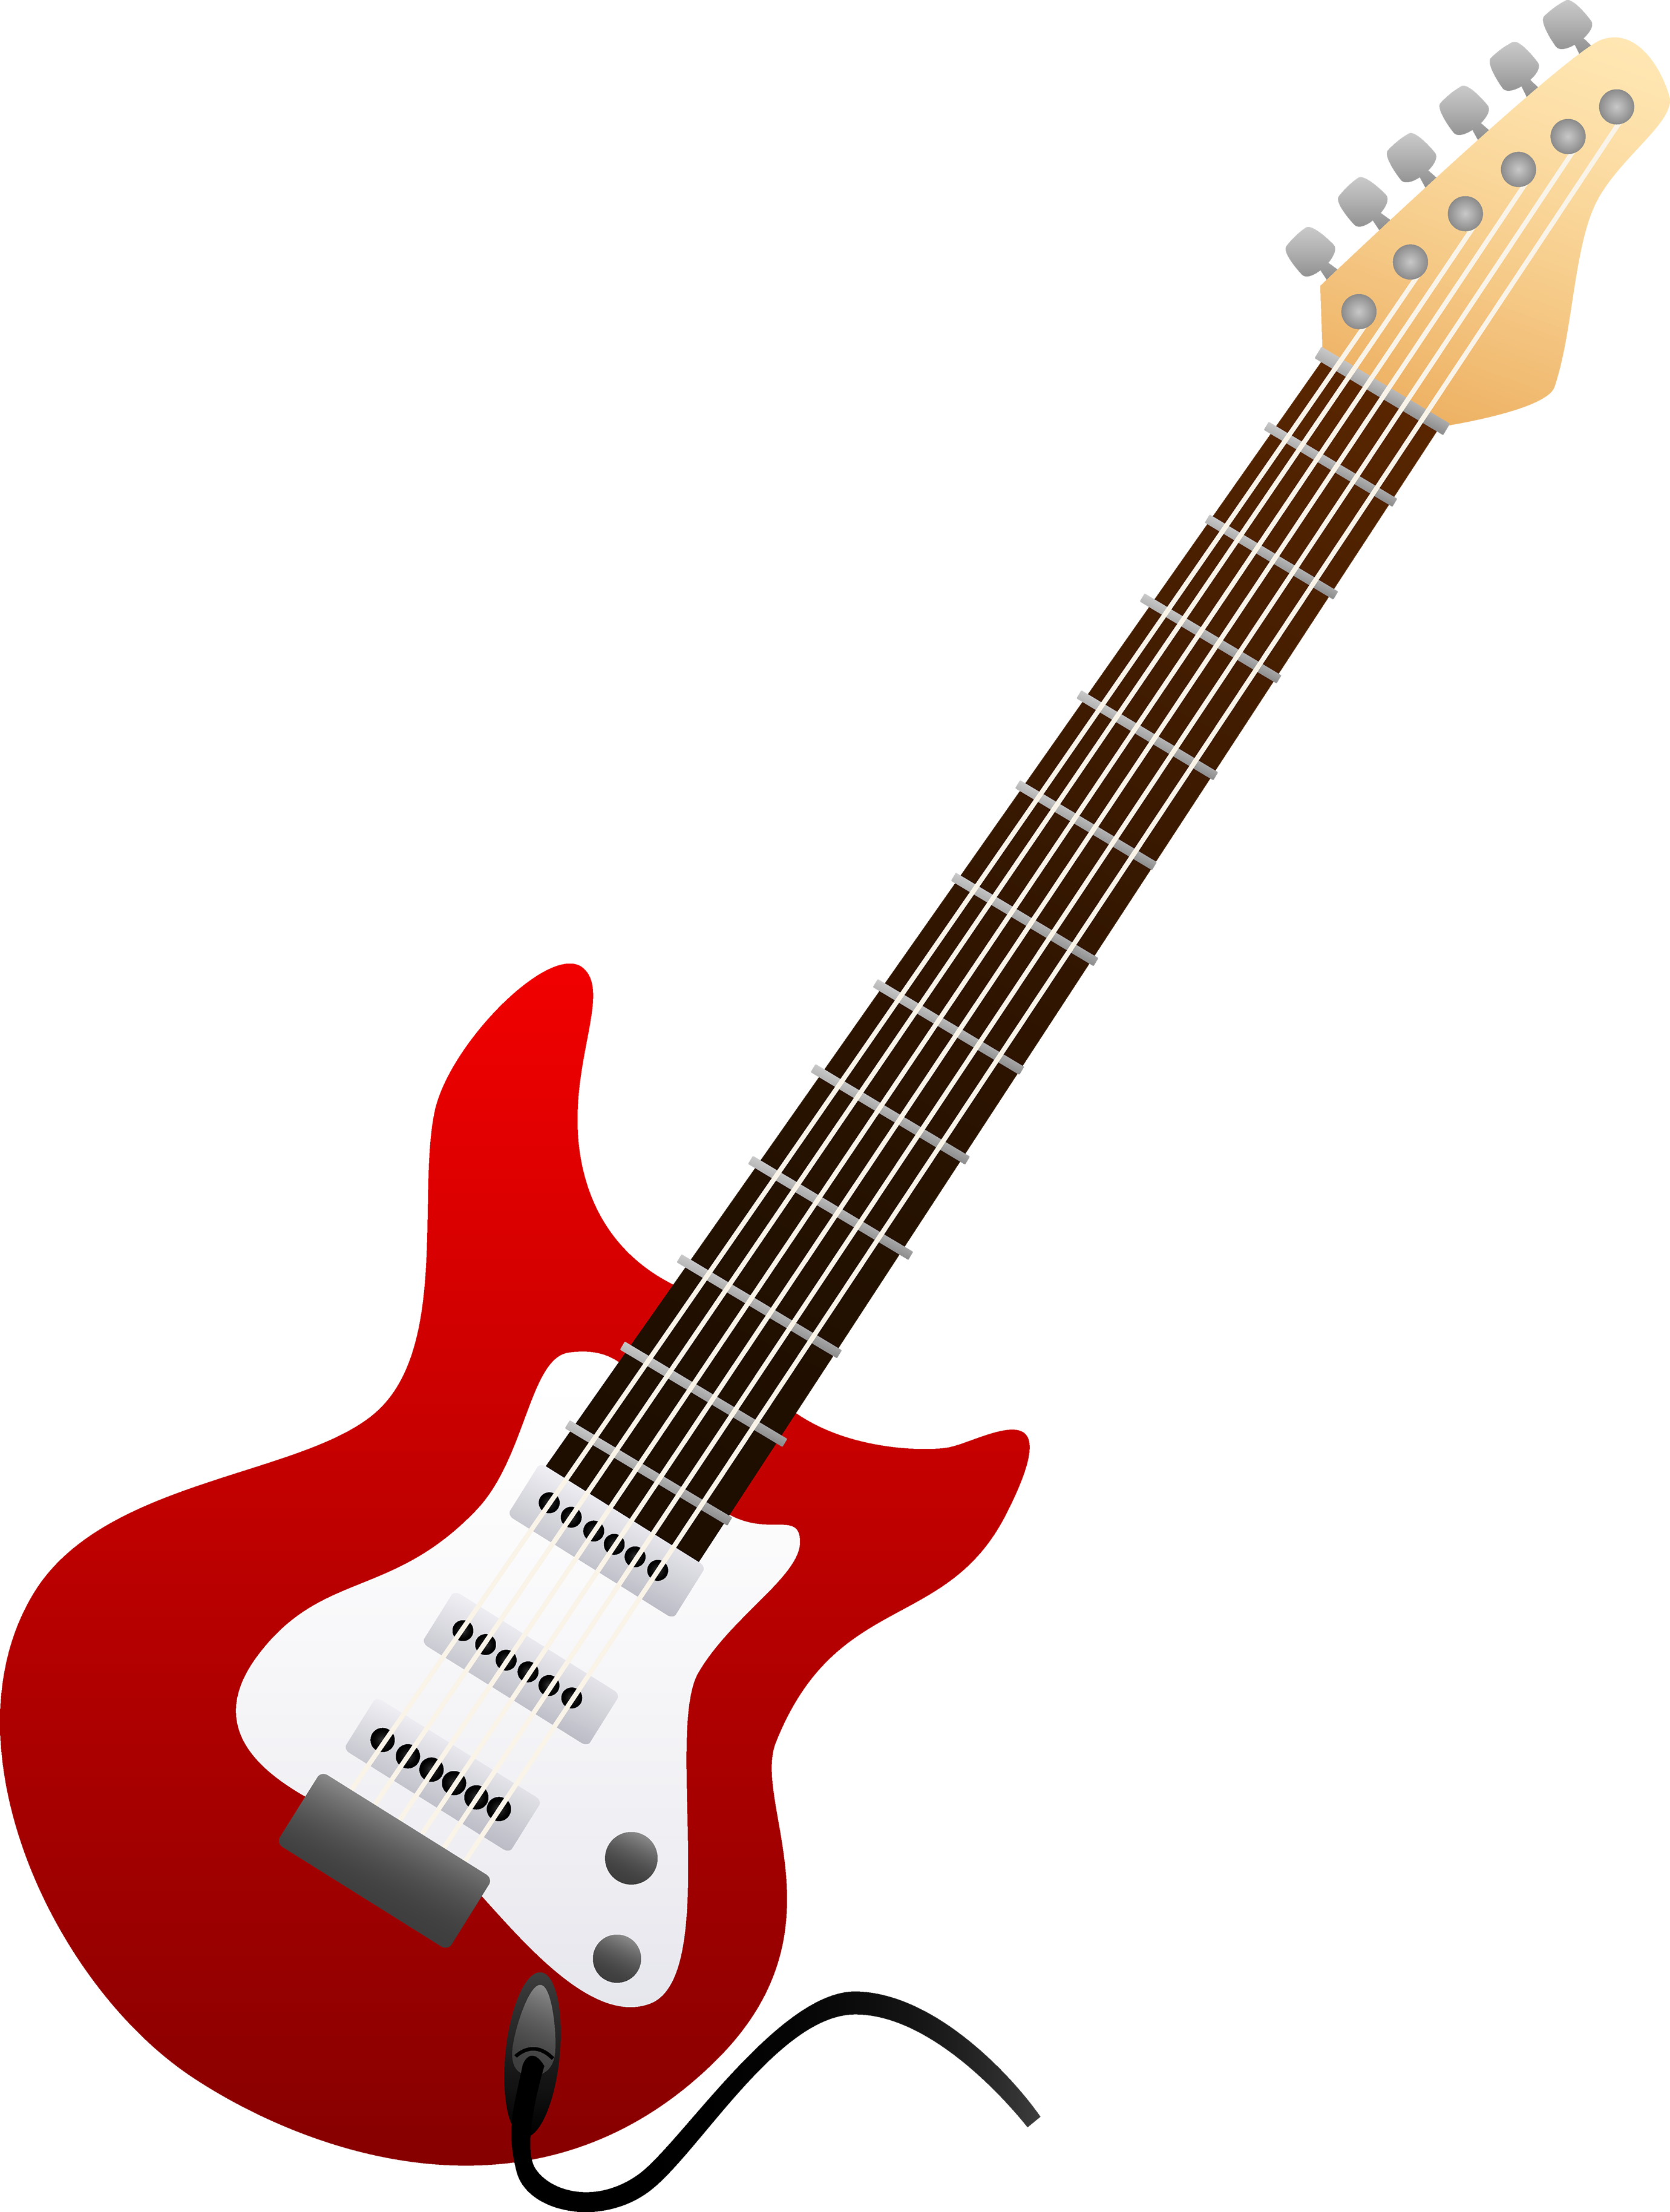 Guitarra elétrica